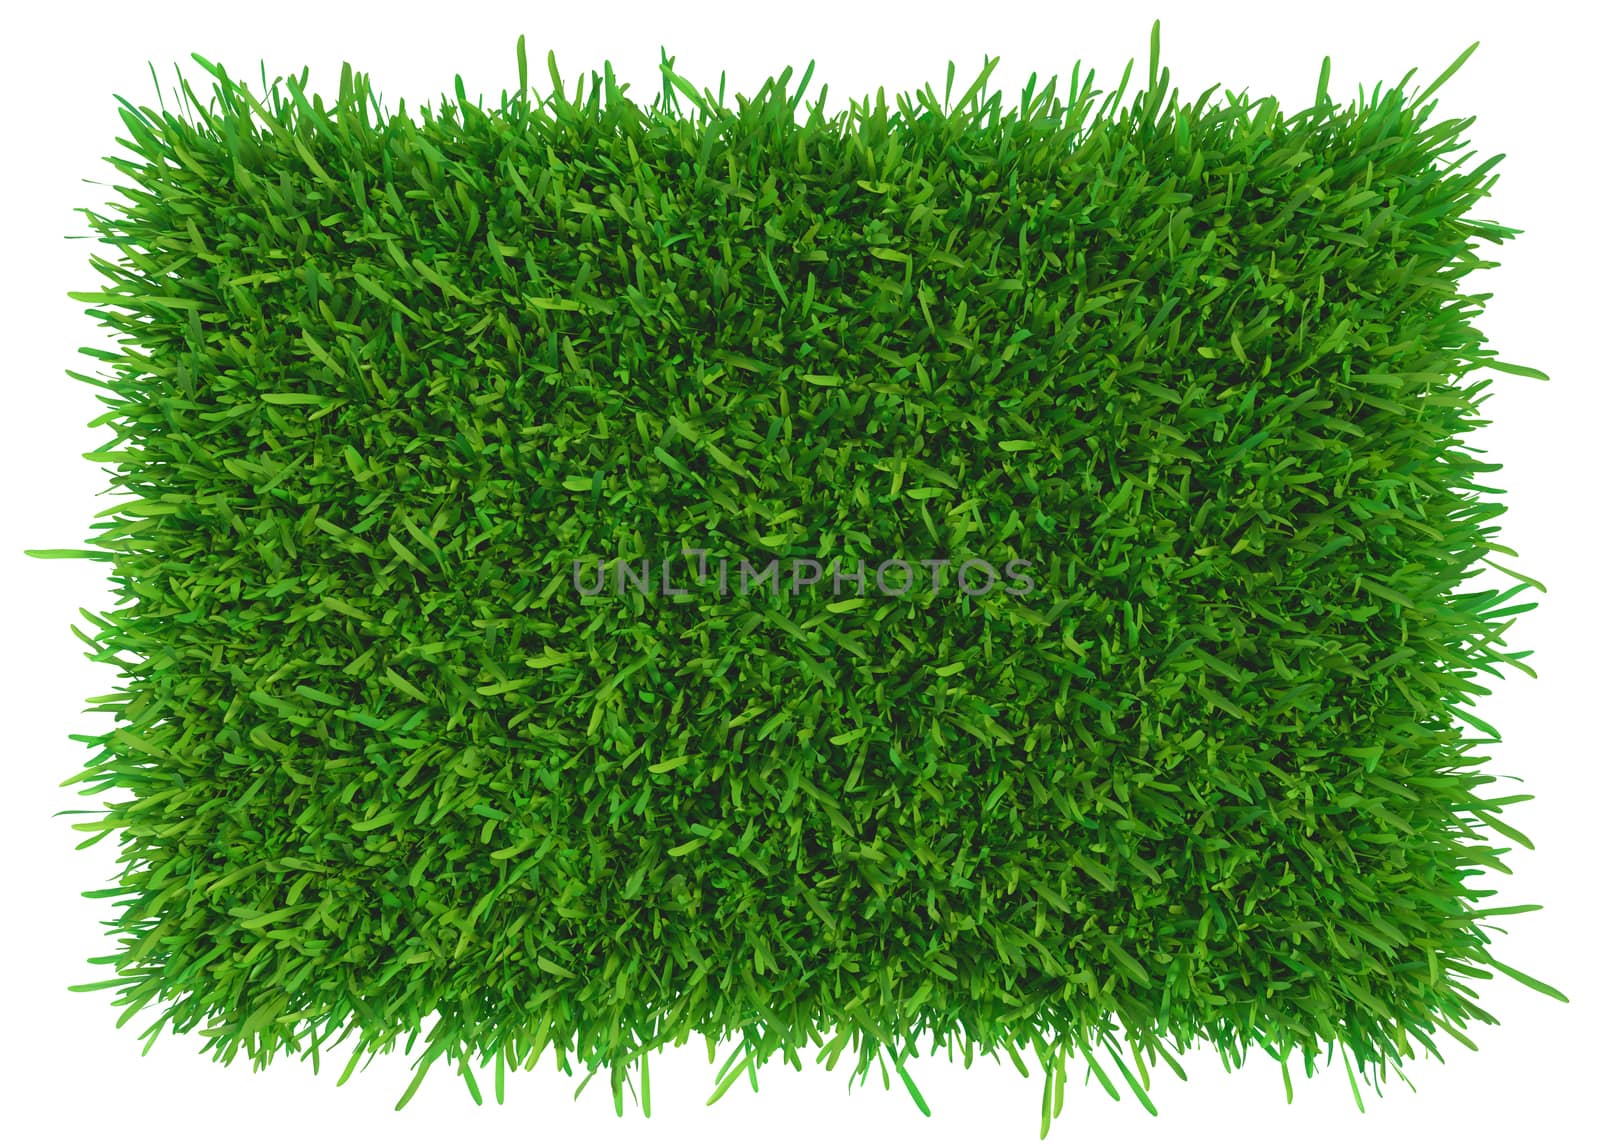 Grass background texture. fresh grass. 3d rendering